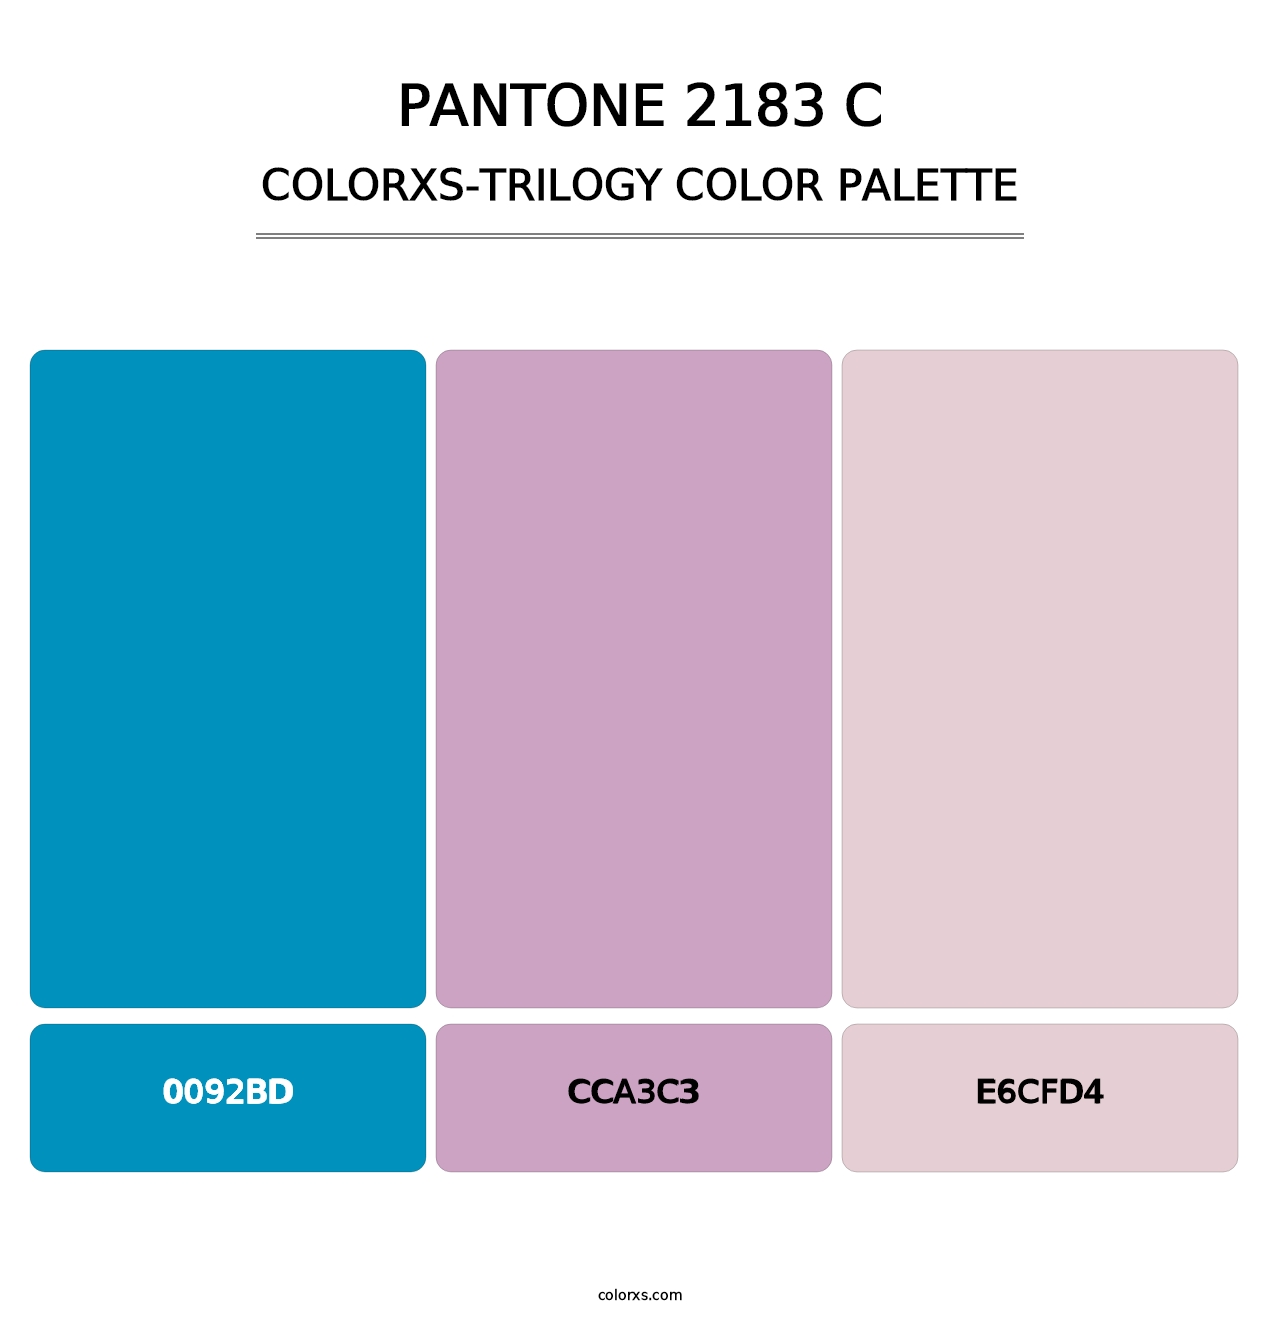 PANTONE 2183 C - Colorxs Trilogy Palette